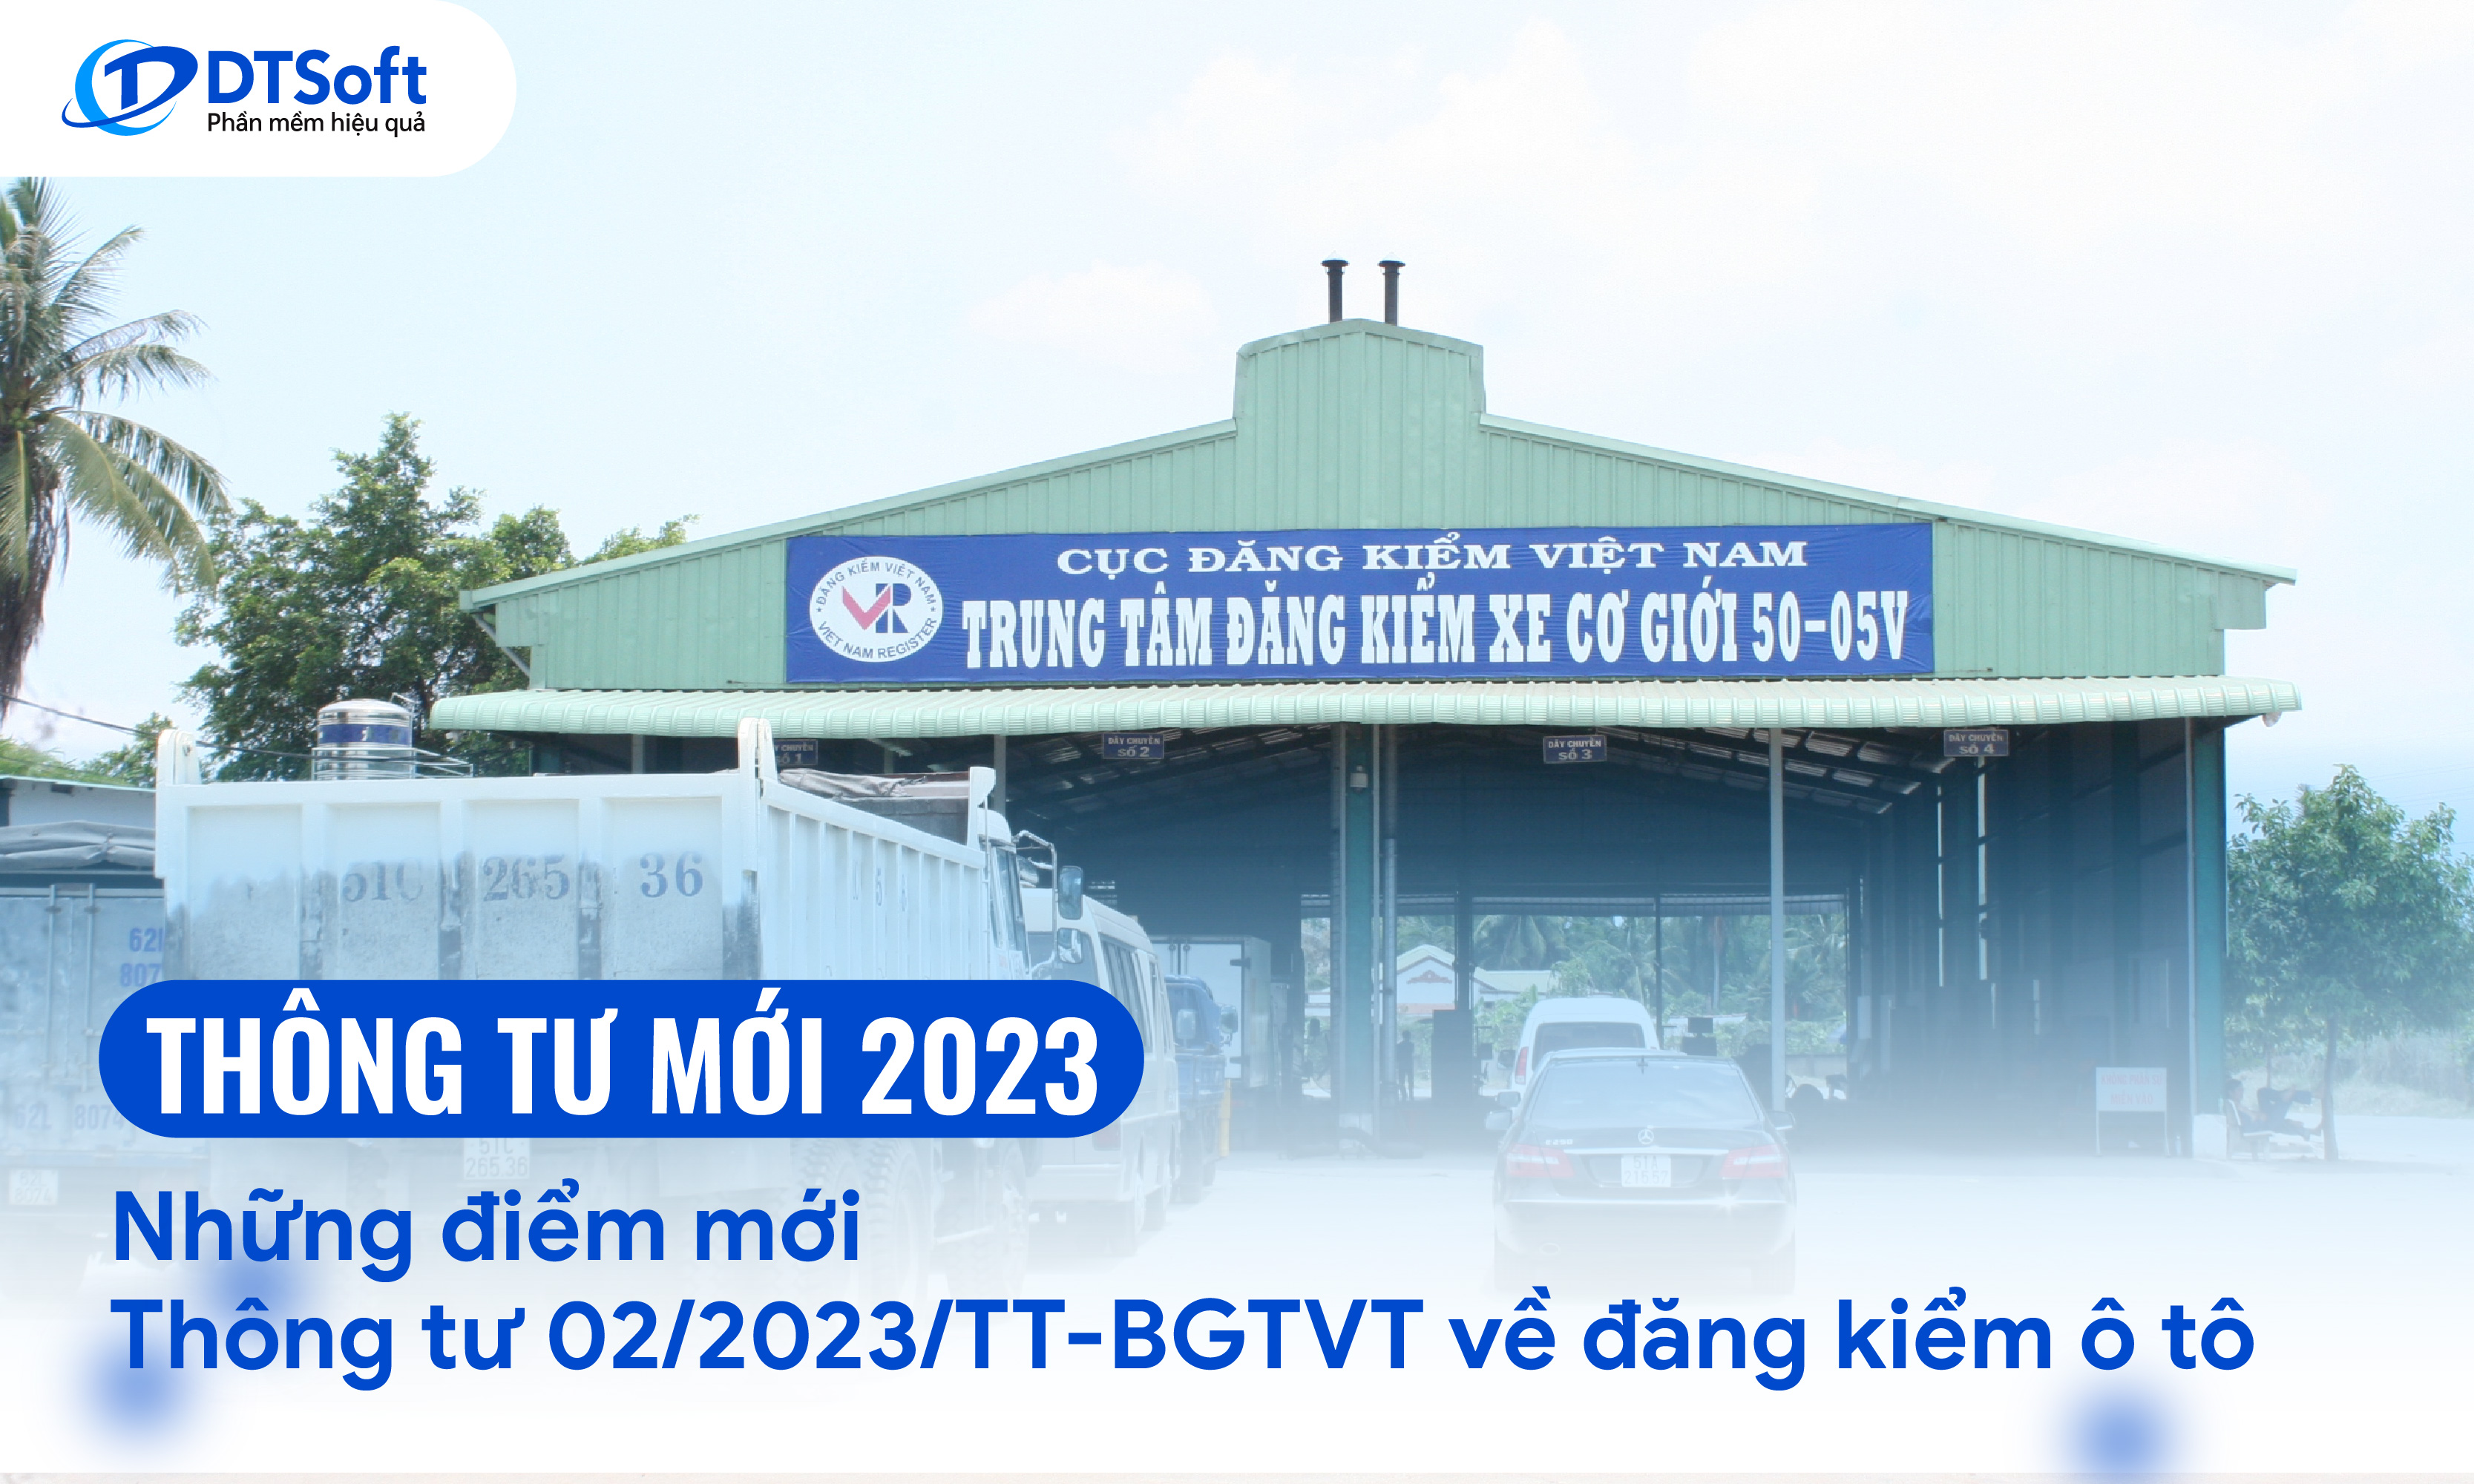 Những điểm mới Thông tư 02/2023/TT-BGTVT về đăng kiểm ô tô bạn cần biết